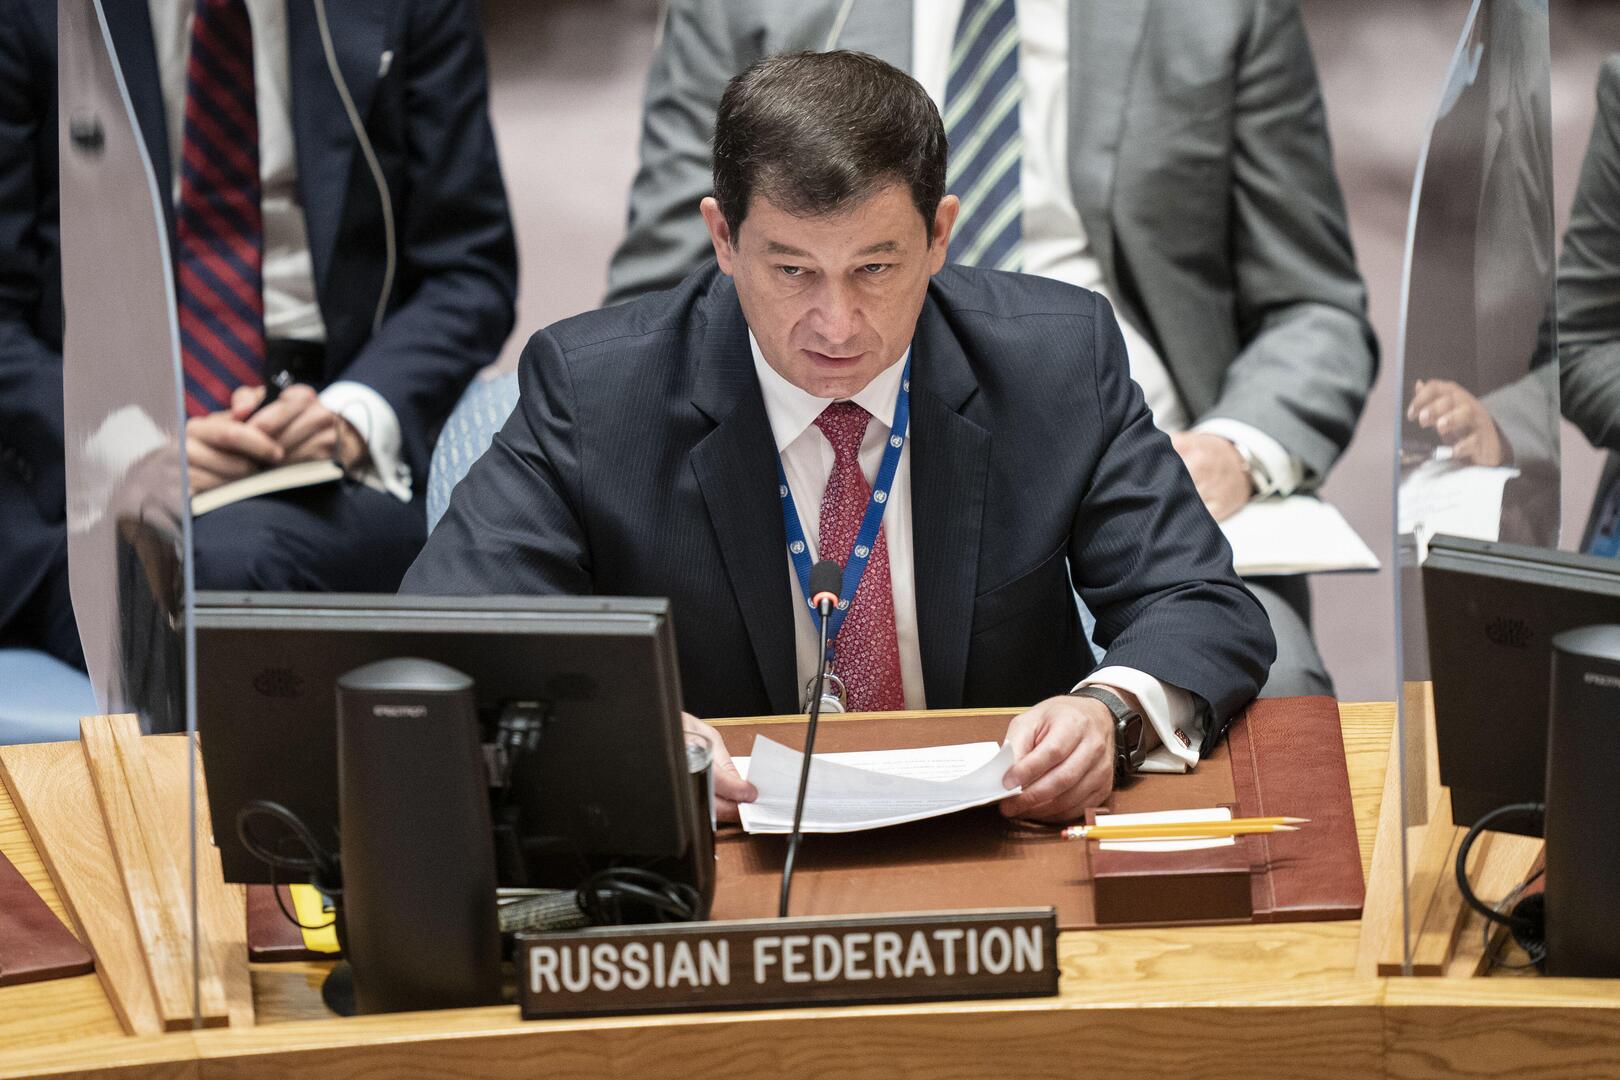 نائب المندوب الروسي لدى الأمم المتحدة دميتري بوليانسكي